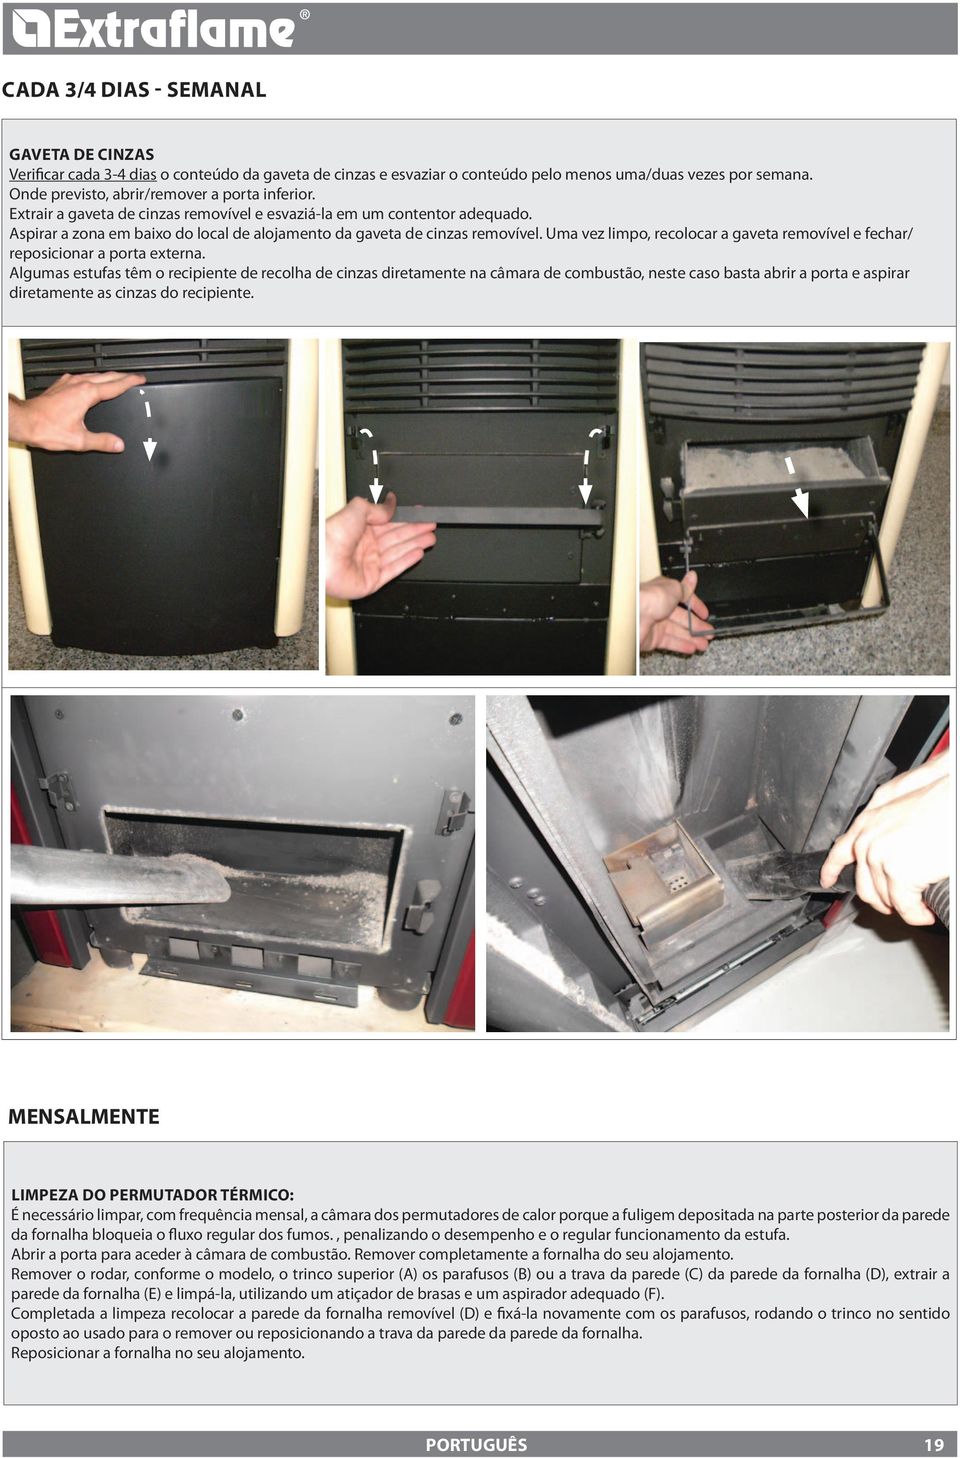 Uma vez limpo, recolocar a gaveta removível e fechar/ reposicionar a porta externa.